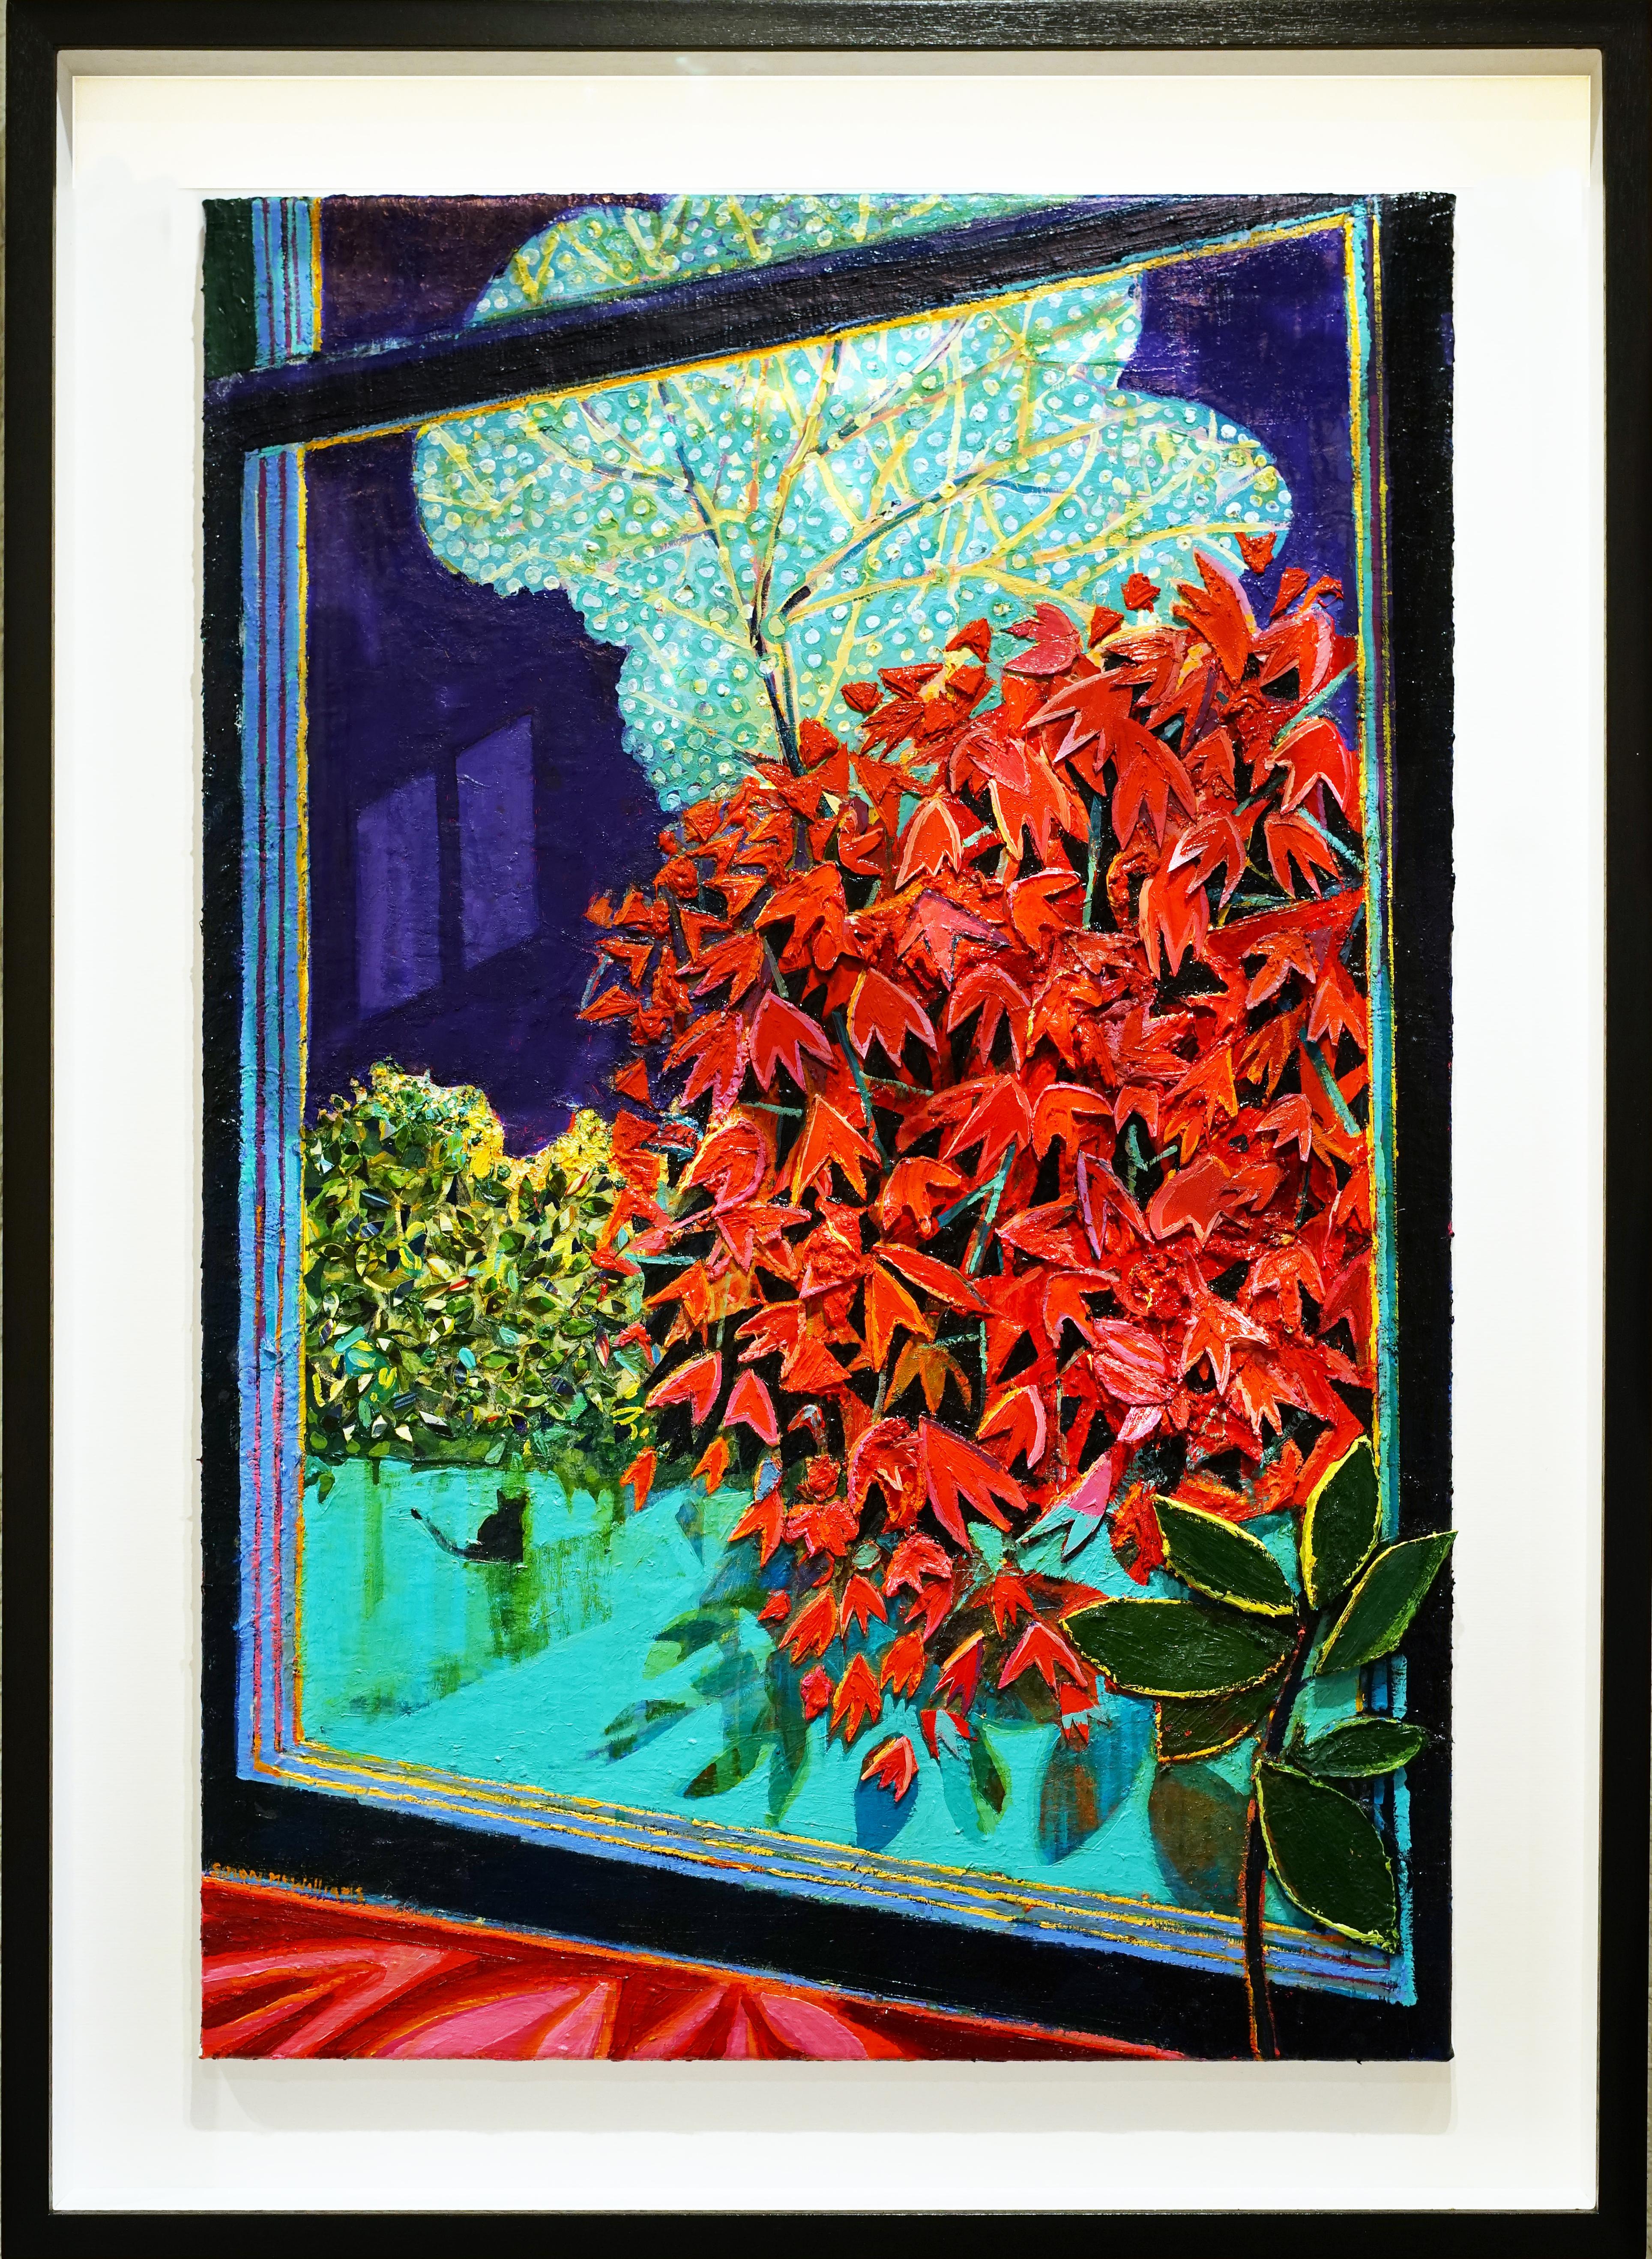 Gartenfenster
Öl und Collage auf Leinen
35 7/8 x 24 in
91 x 61 cm

